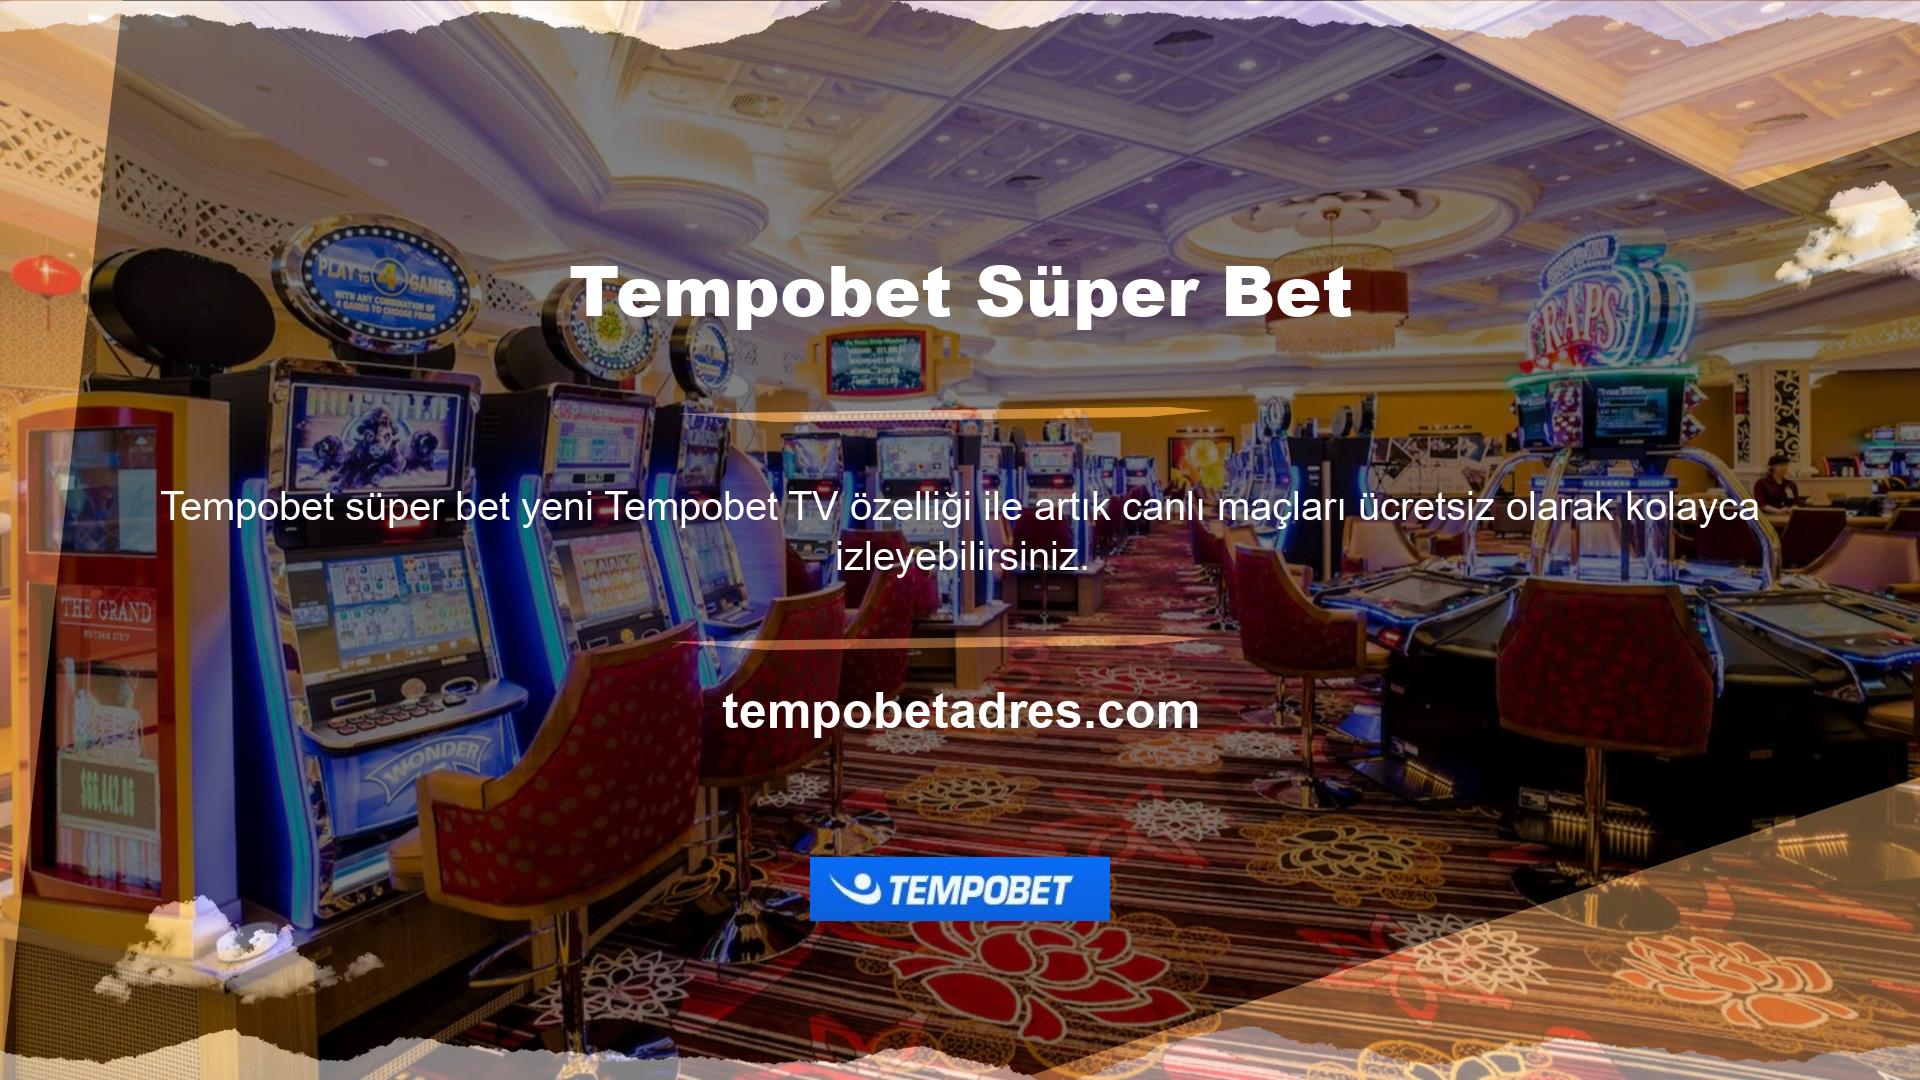 Tempobet TV üyelik hizmeti olarak ücretsiz ve reklamsız canlı maç izleme platformudur